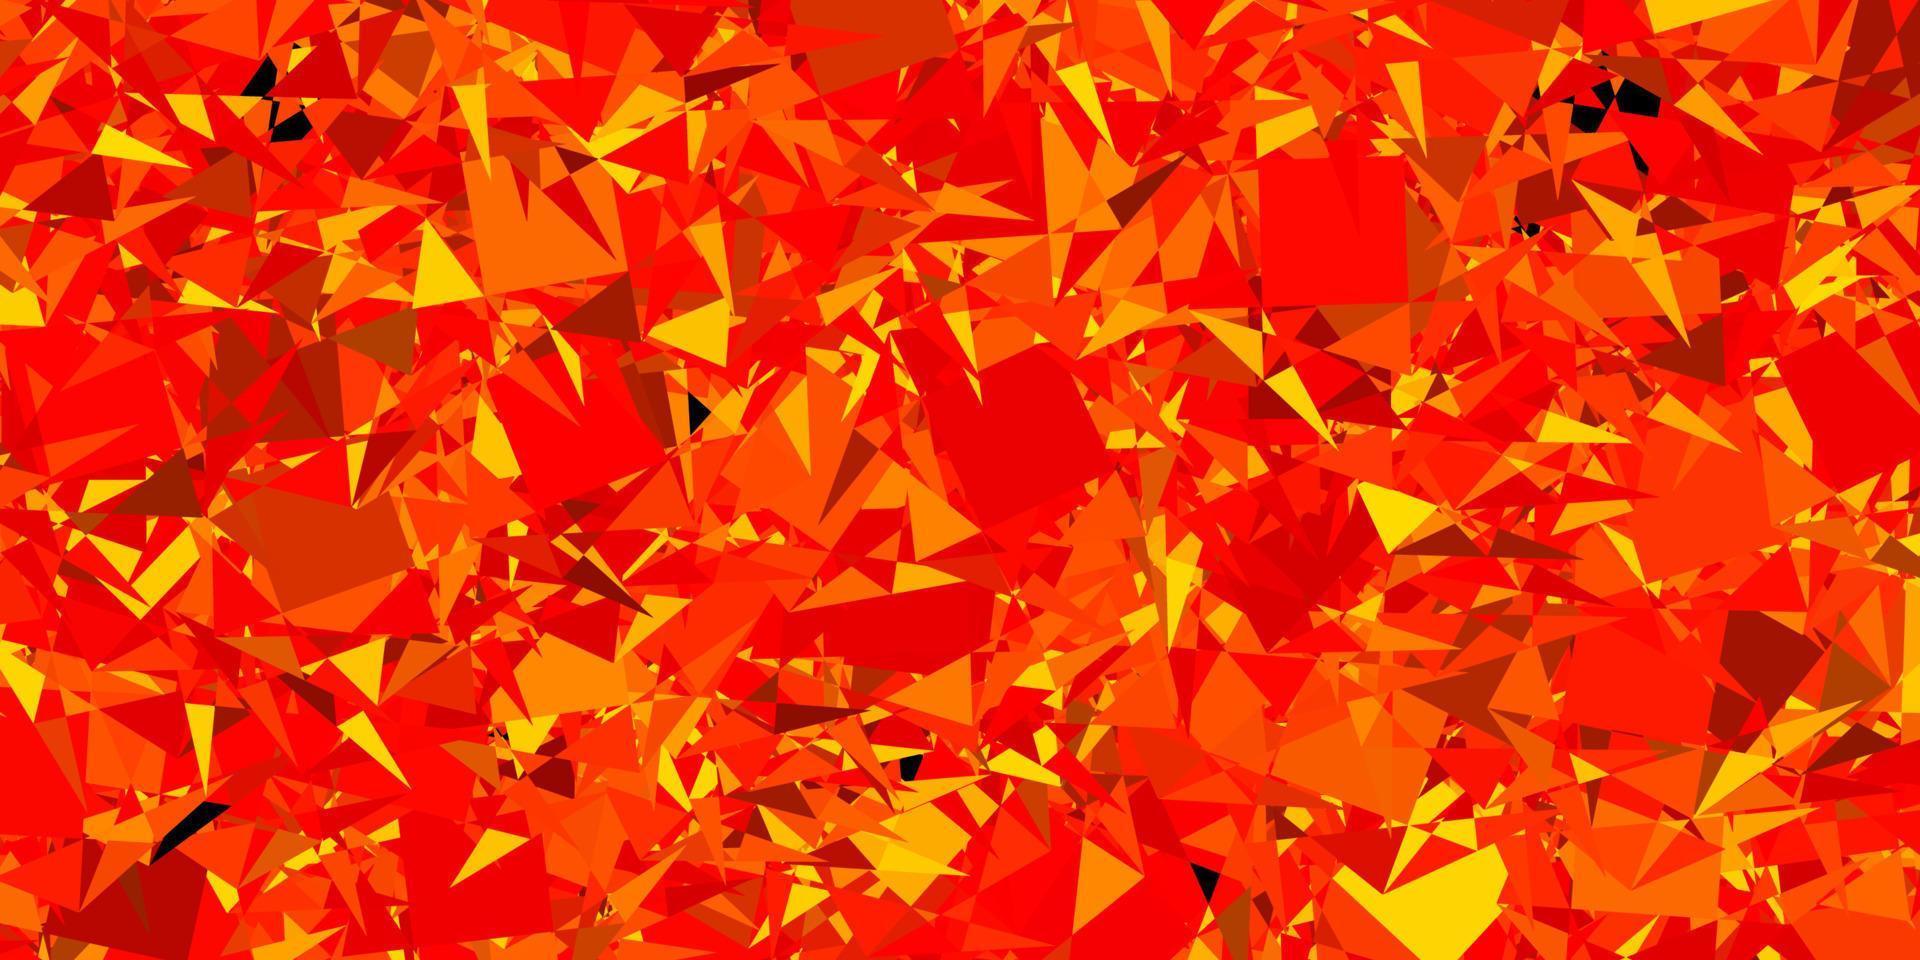 trama vettoriale arancione scuro con triangoli casuali.